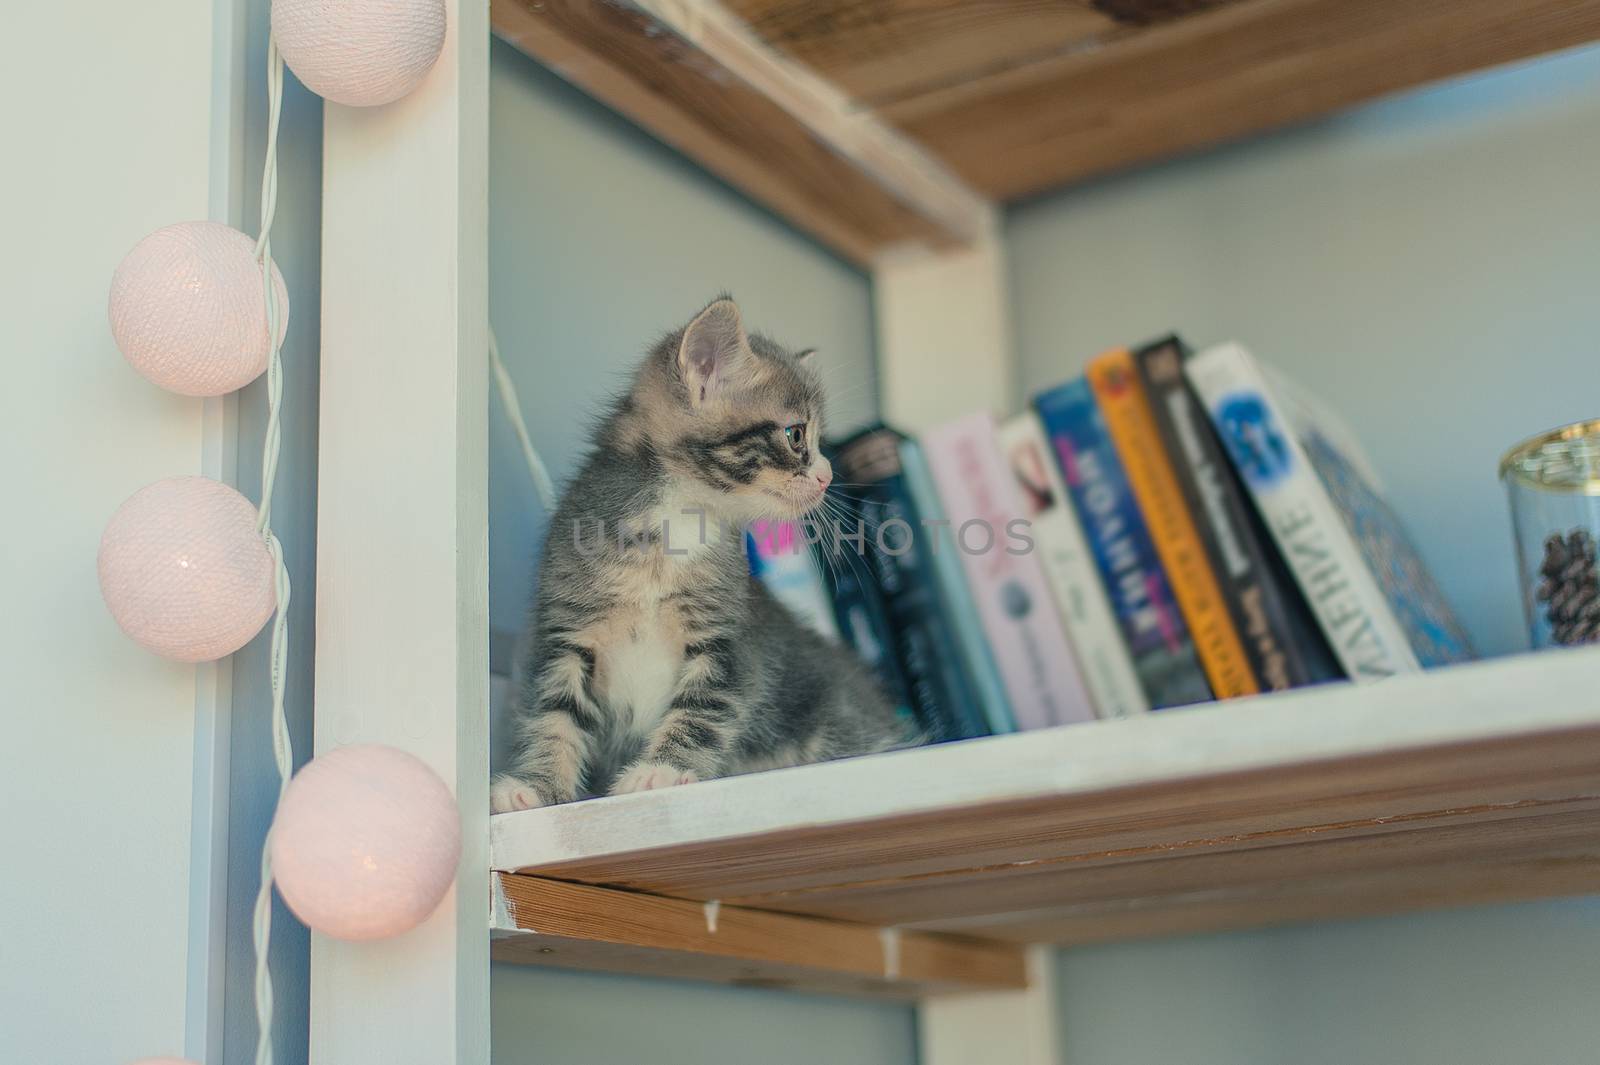 little gray kitten sitting on a white bookshelf by chernobrovin